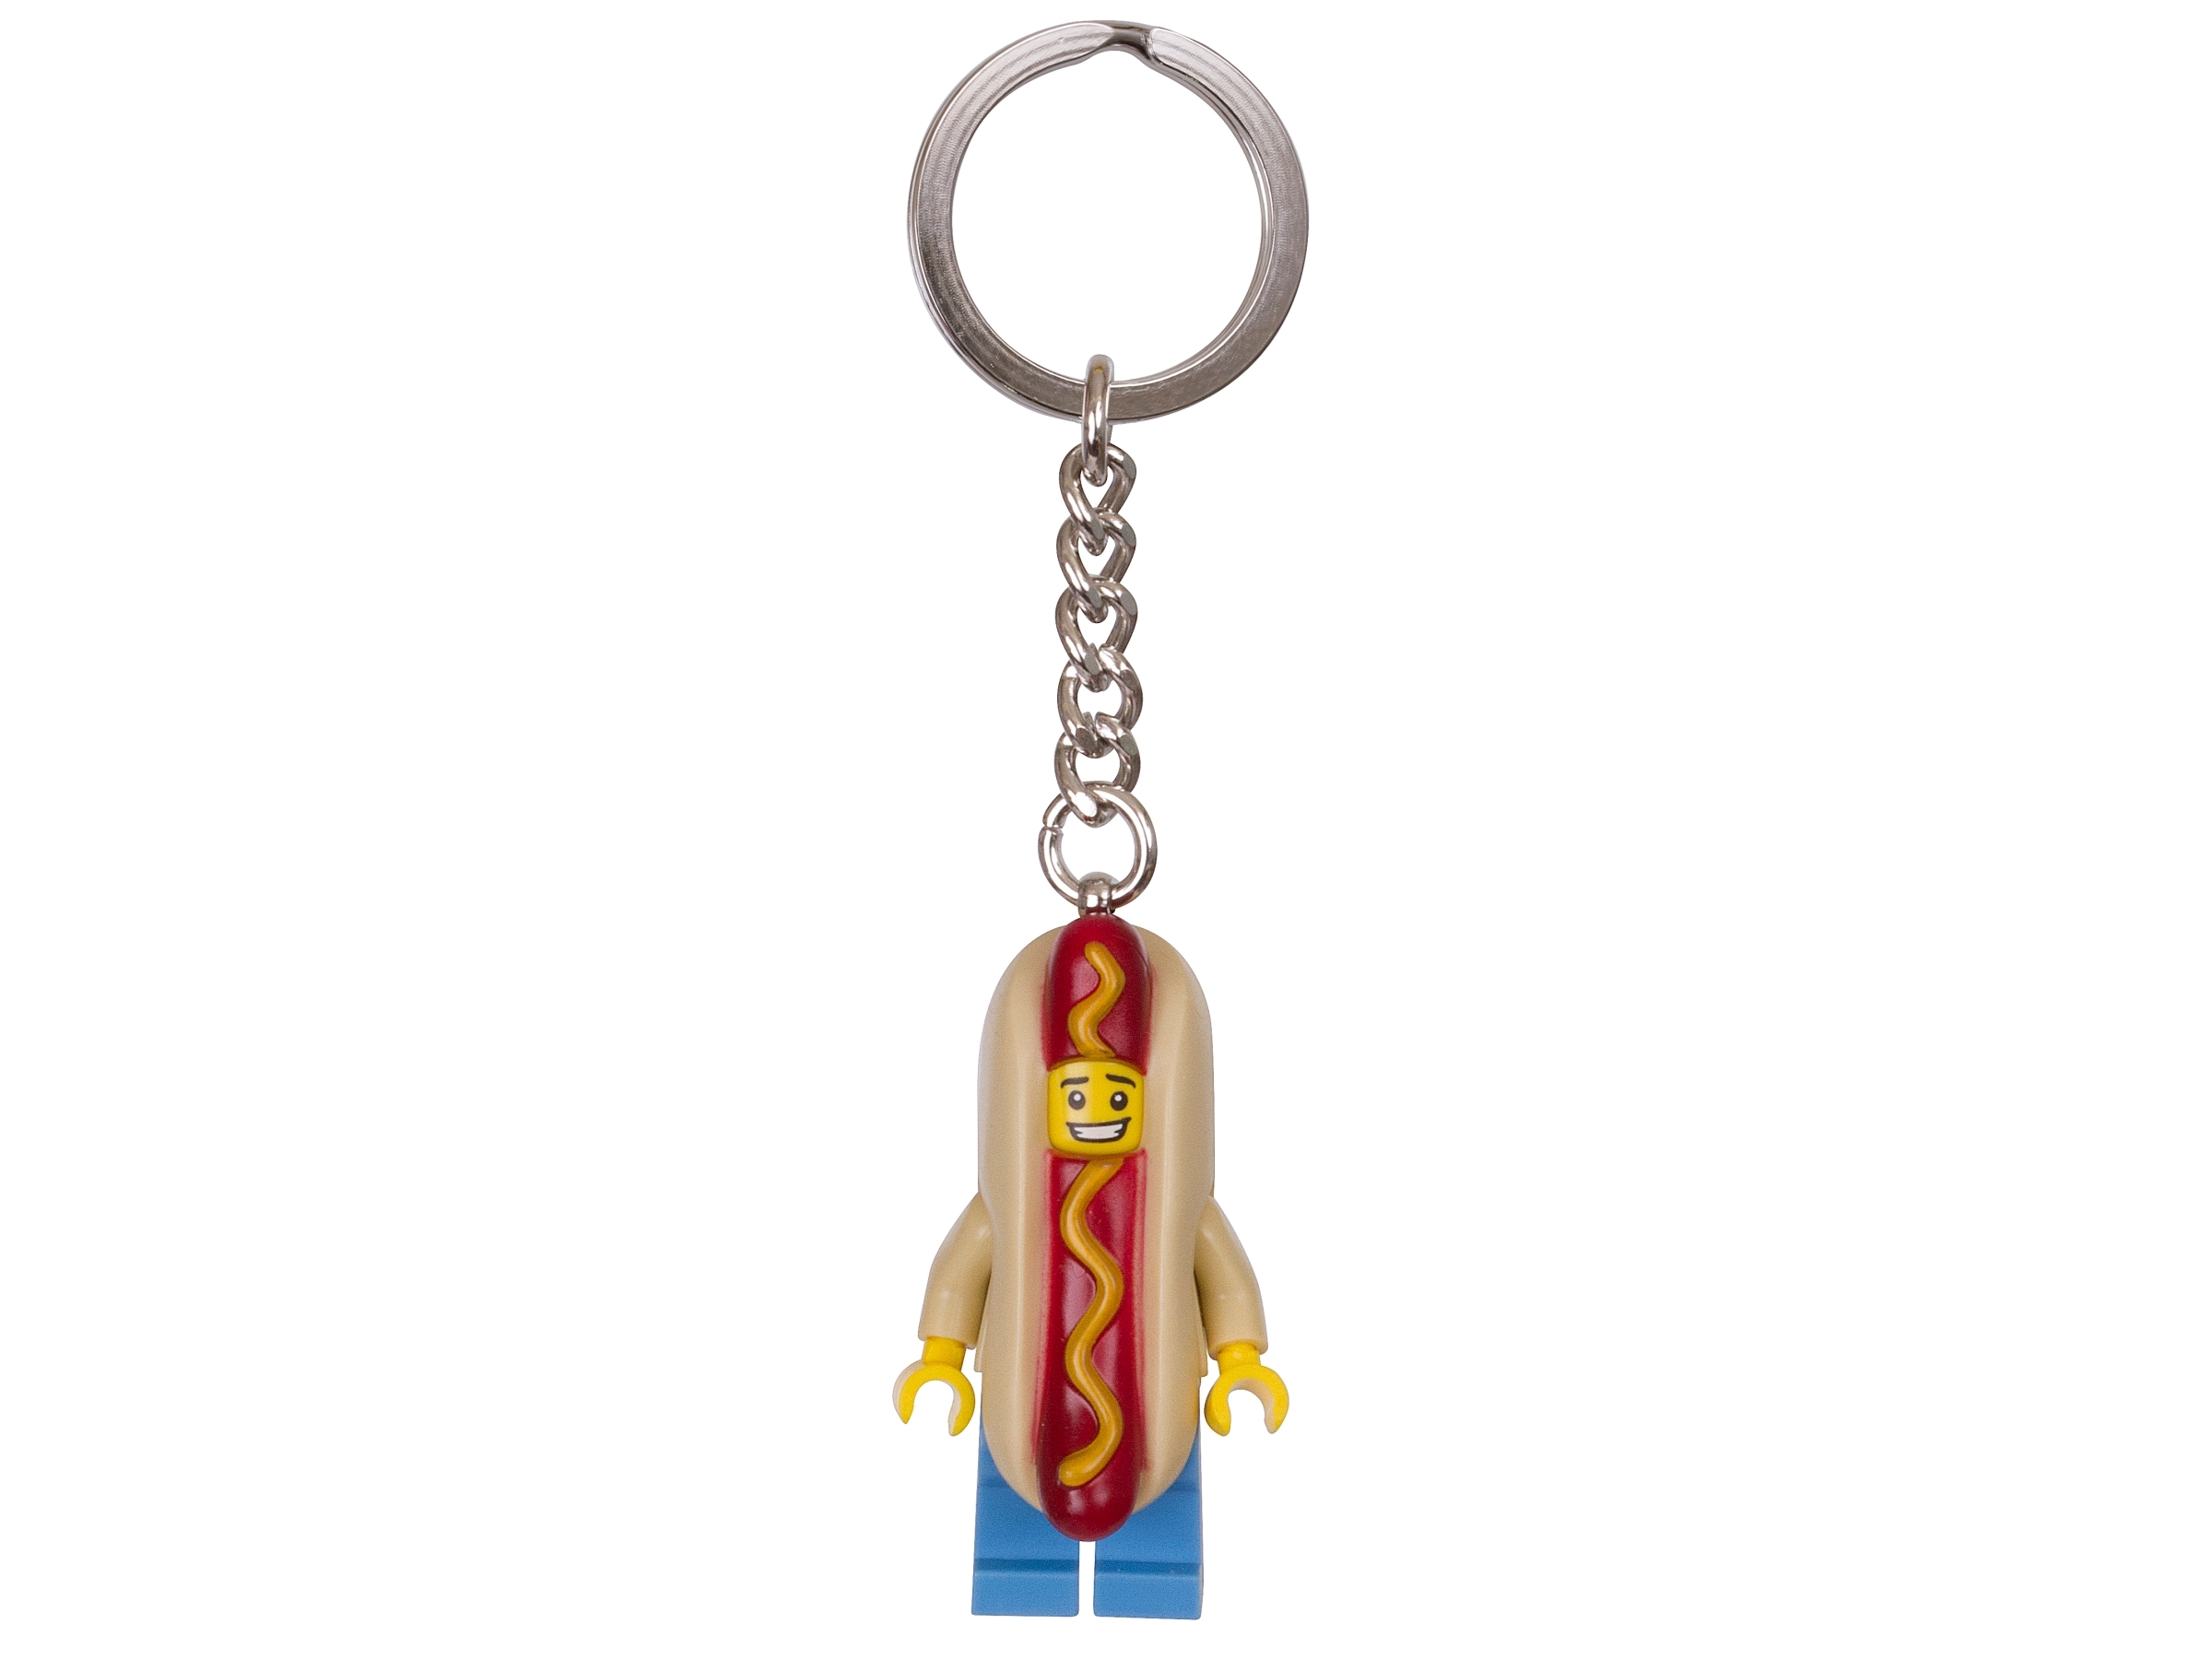 lego minifigures hot dog guy